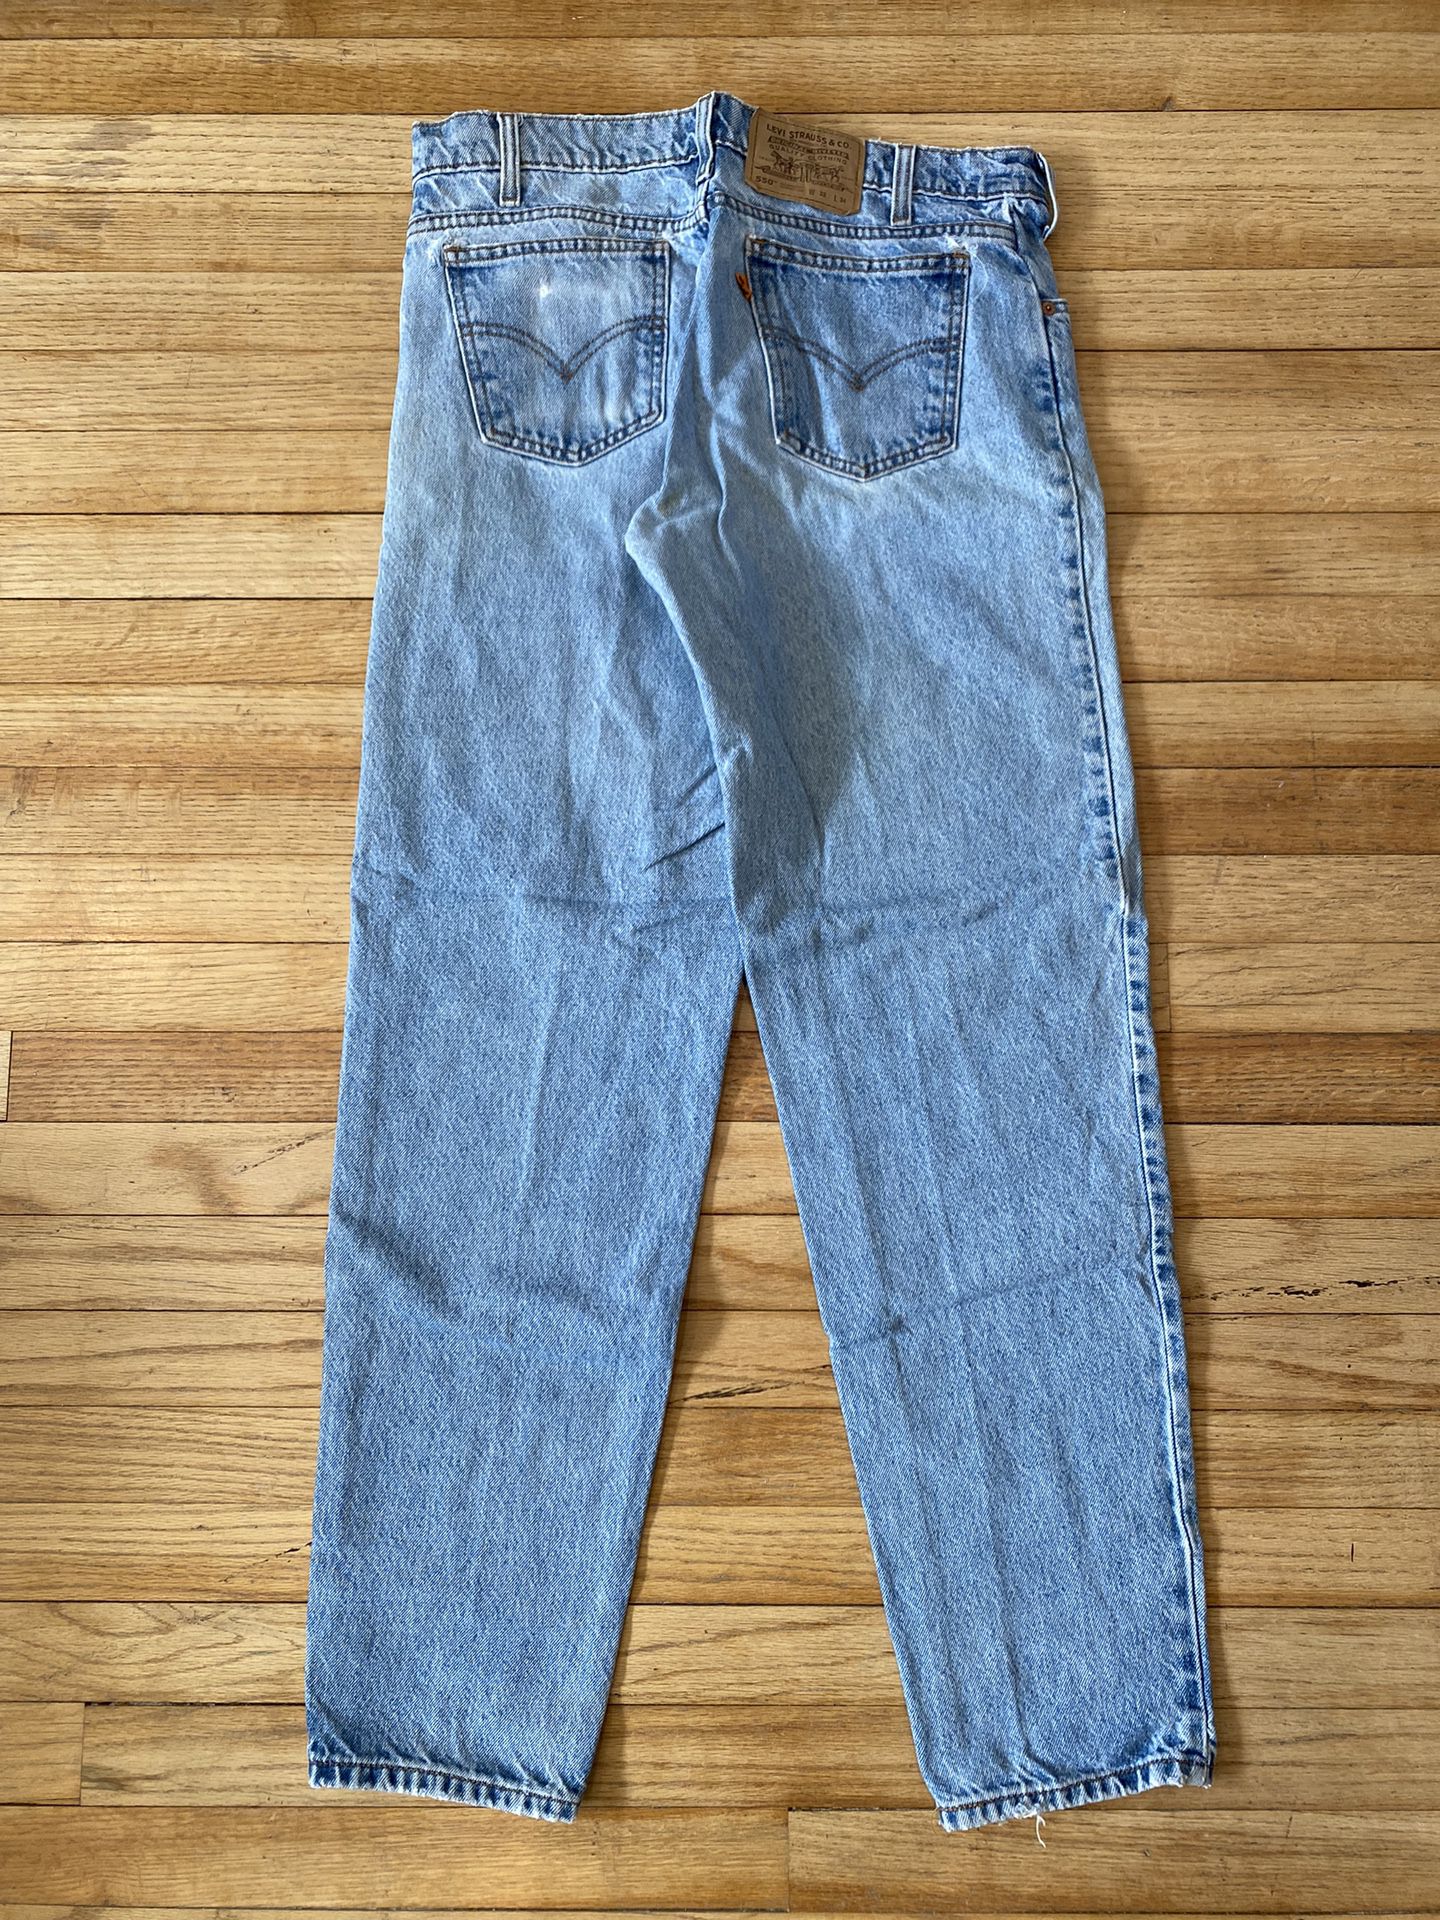 Men’s Levi’s Jeans 550 Vintage 